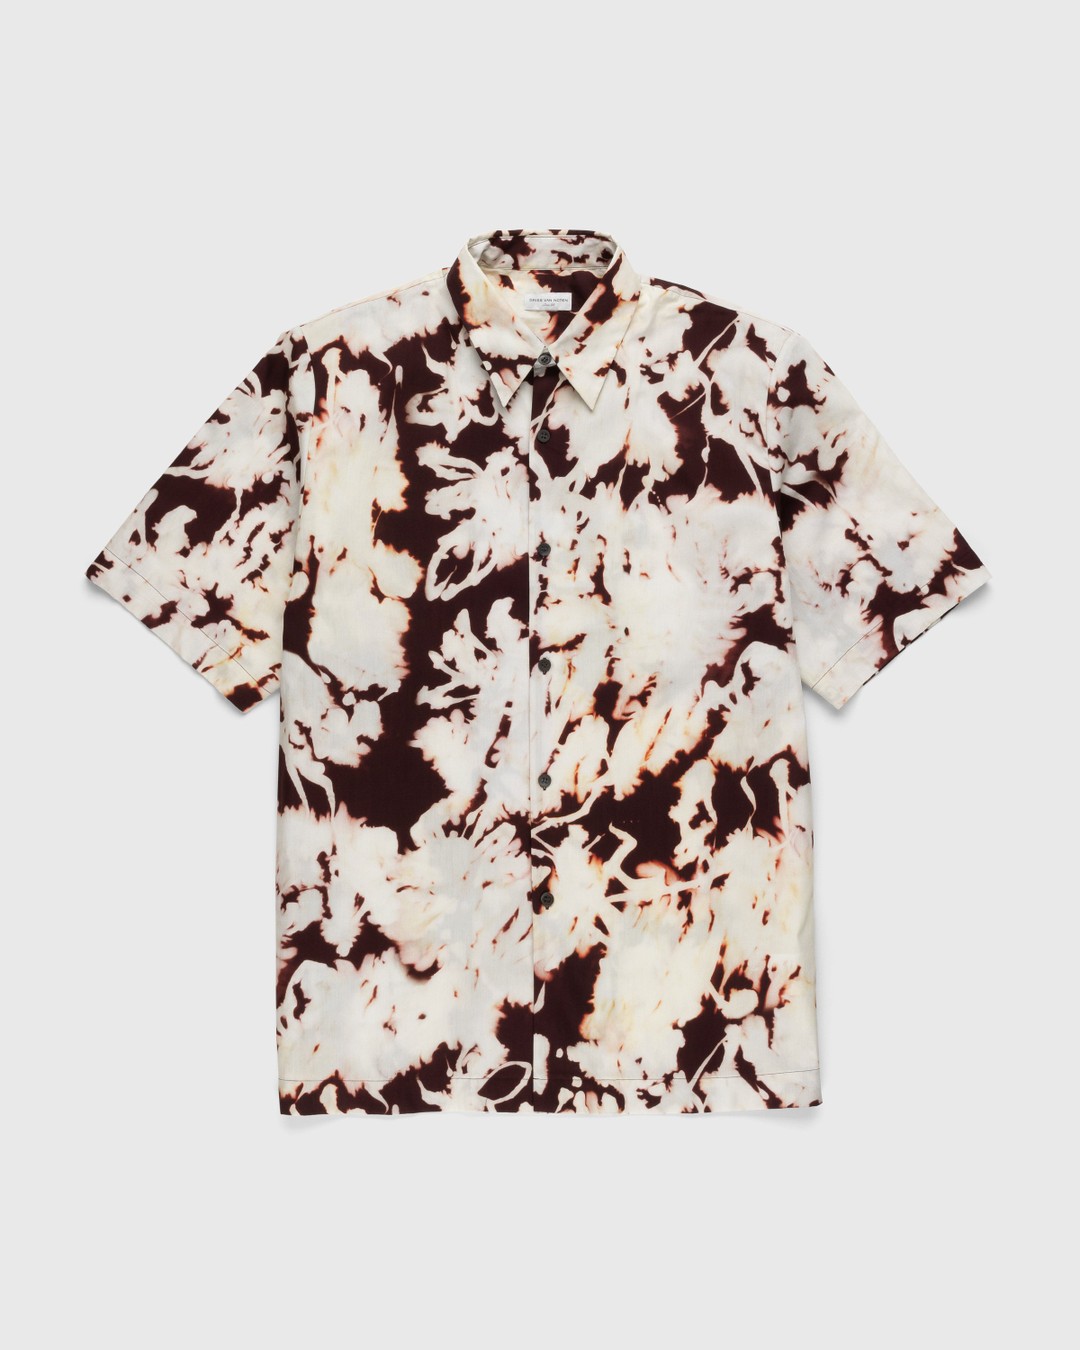 Dries van Noten – Clasen Shirt Multi - Shortsleeve Shirts - Multi - Image 1